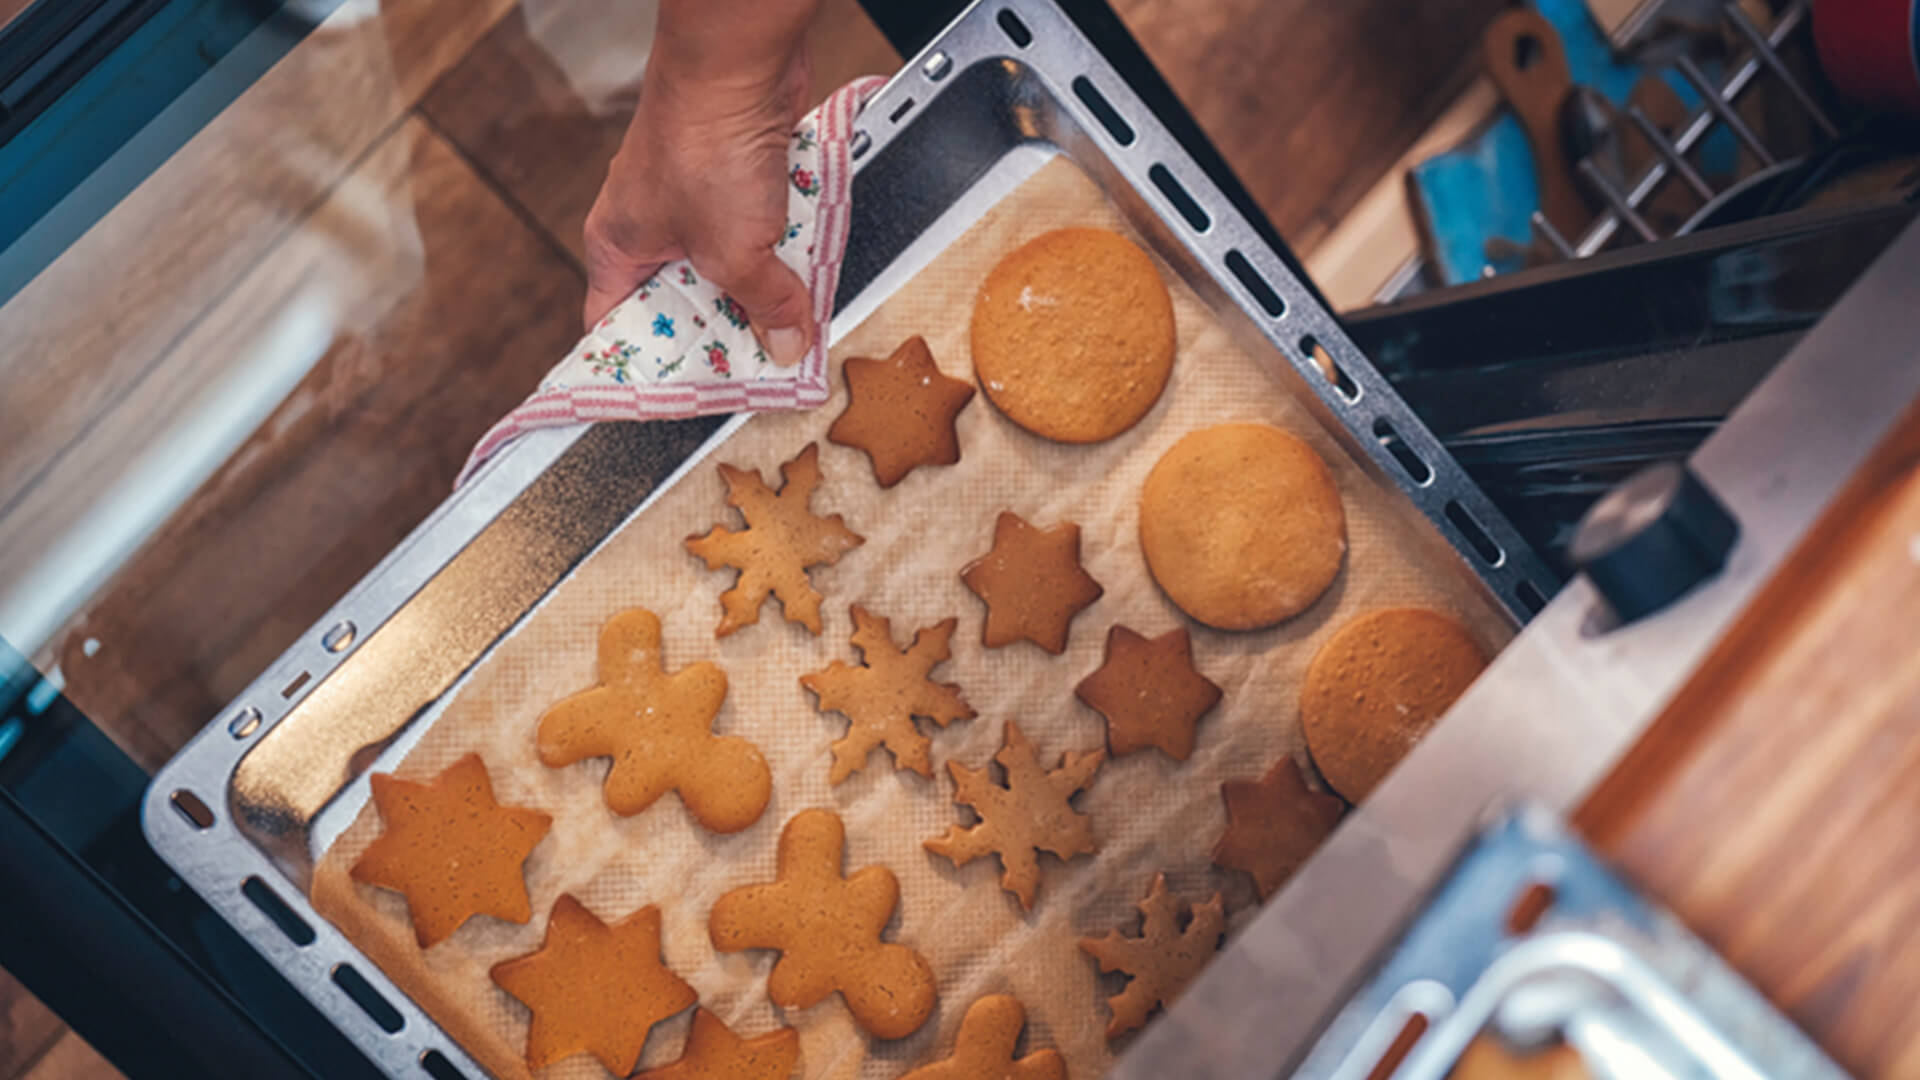 Biscoito caseiro: foto de biscoitos de diversos formatos em uma assadeira.